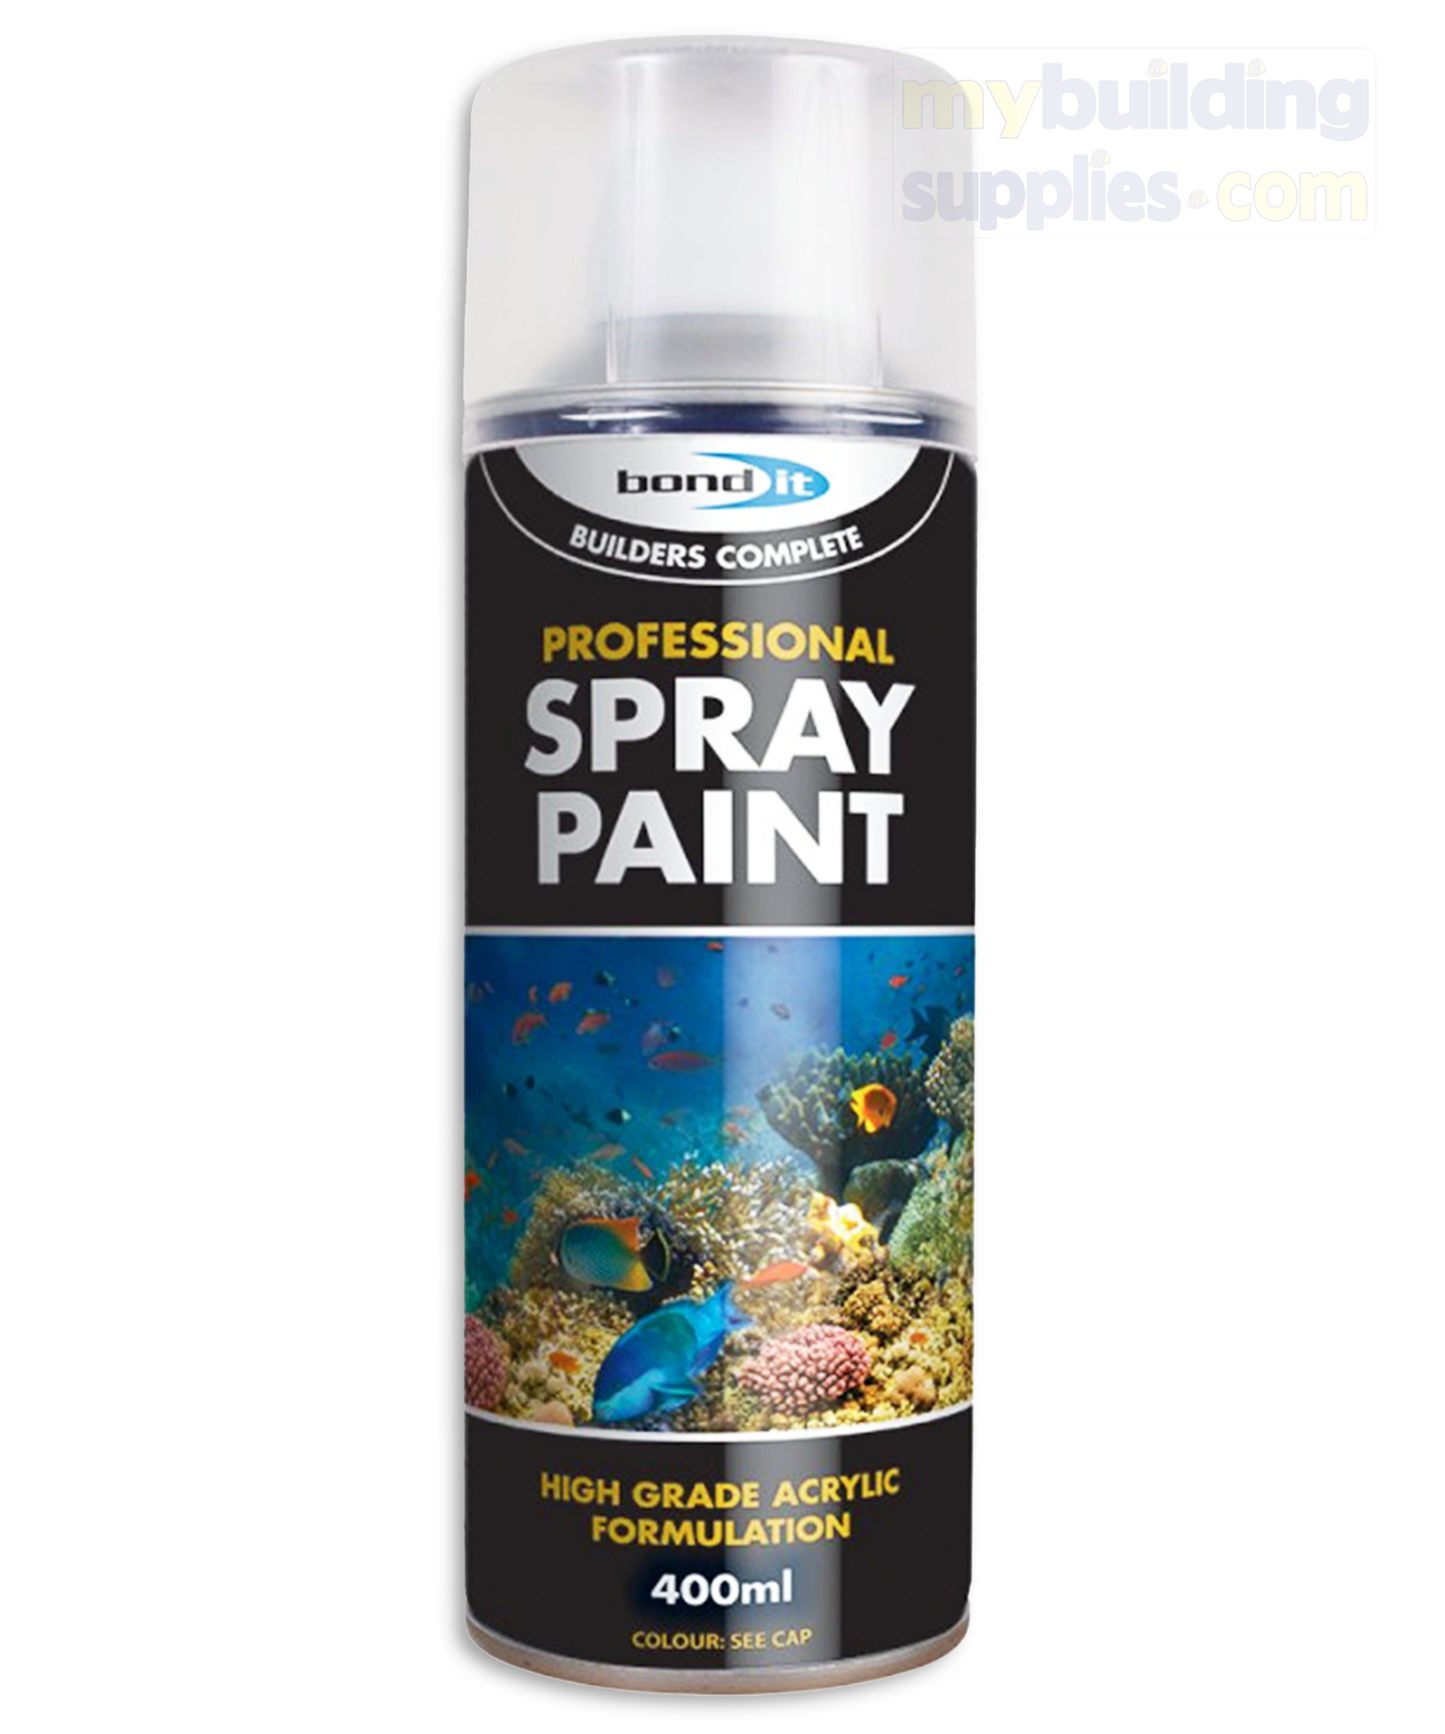 Bond It Professional Grade Spray Paint Indoor & Outdoor, 400ml